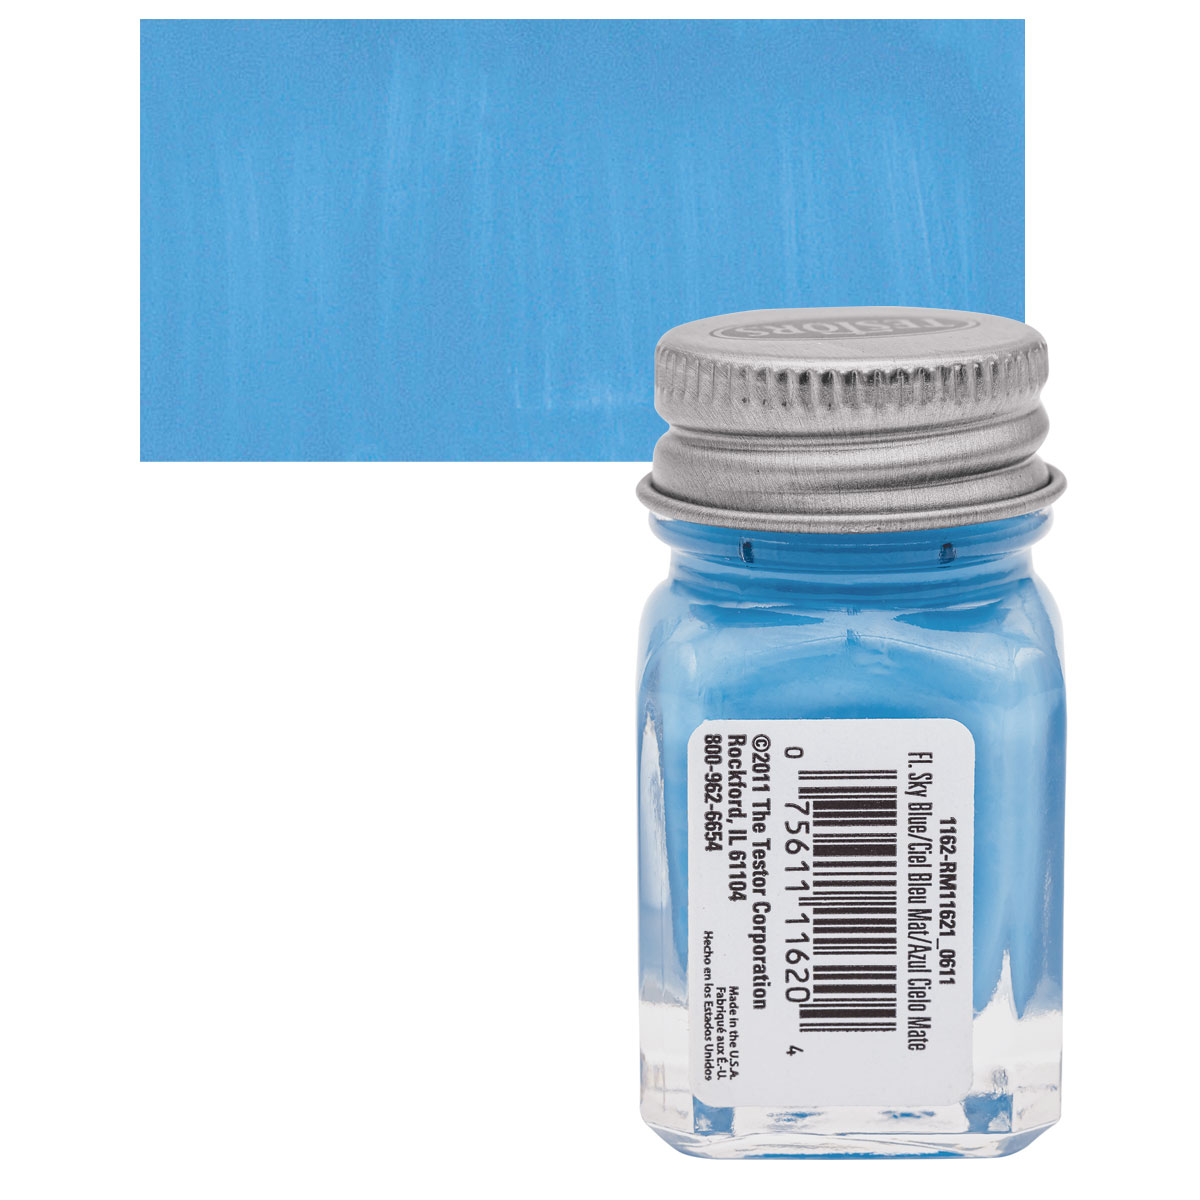 Testors Enamel Paint - Flat Blue, 1/4 oz bottle